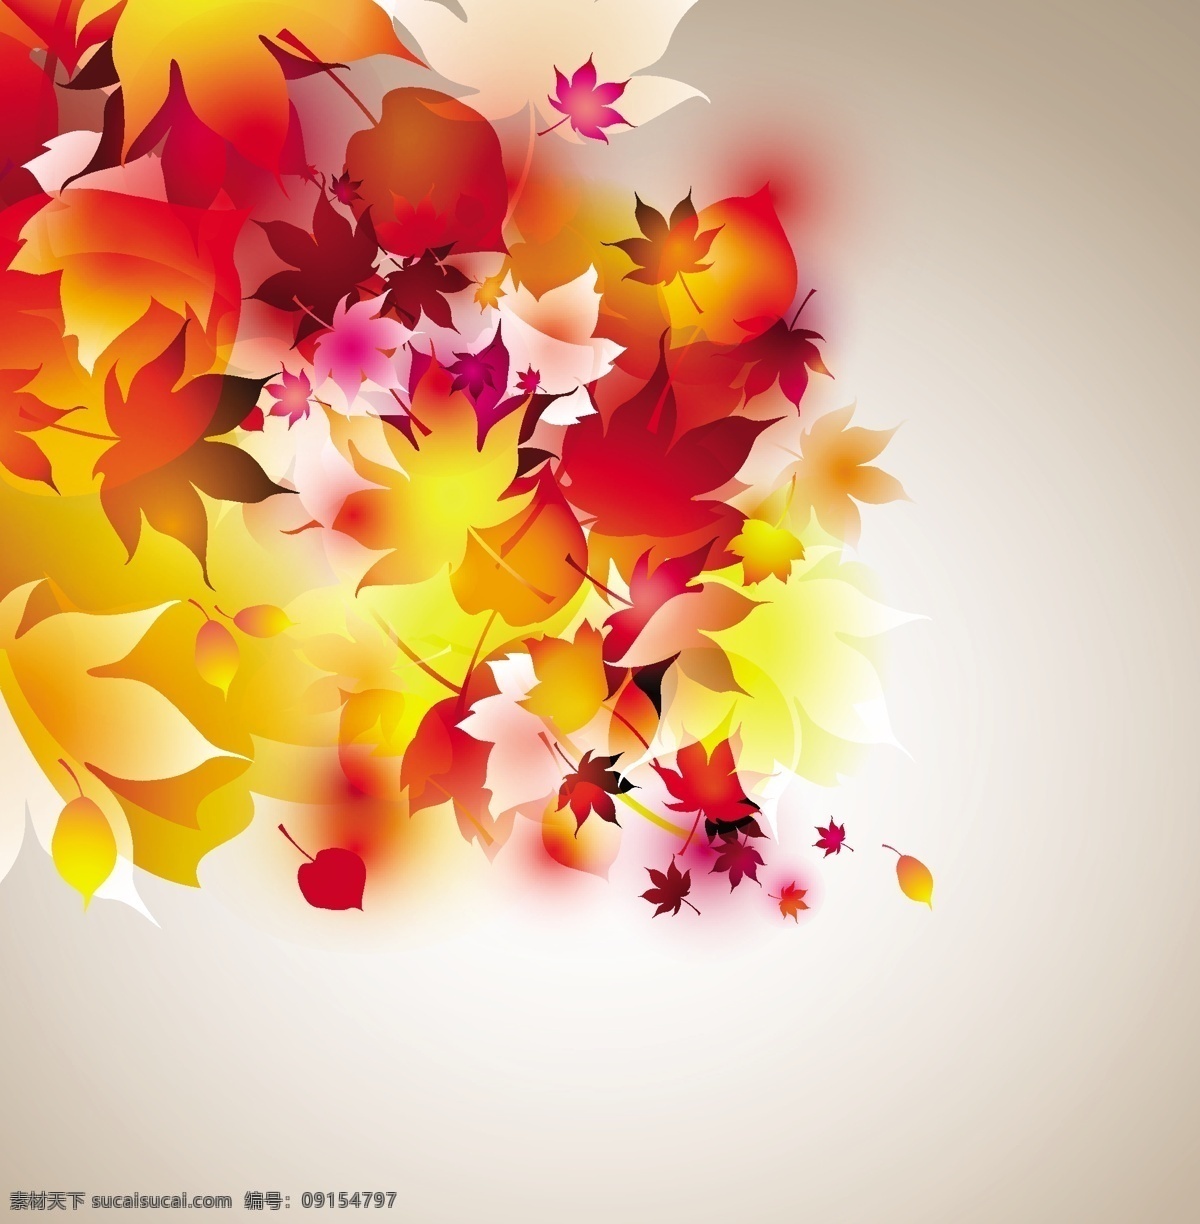 充满 活力 秋叶 抽象 矢量 背景 插画 创意 高分辨率 接口 免费 秋天 病 媒 生物 时尚 独特的 原始的 高质量 设计新的 ui元素 hd 元素 详细的 秋天的叶子 叶 红色的 黄色的发光的 秋天的颜色 丰富多彩的 生动的 充满活力 psd源文件